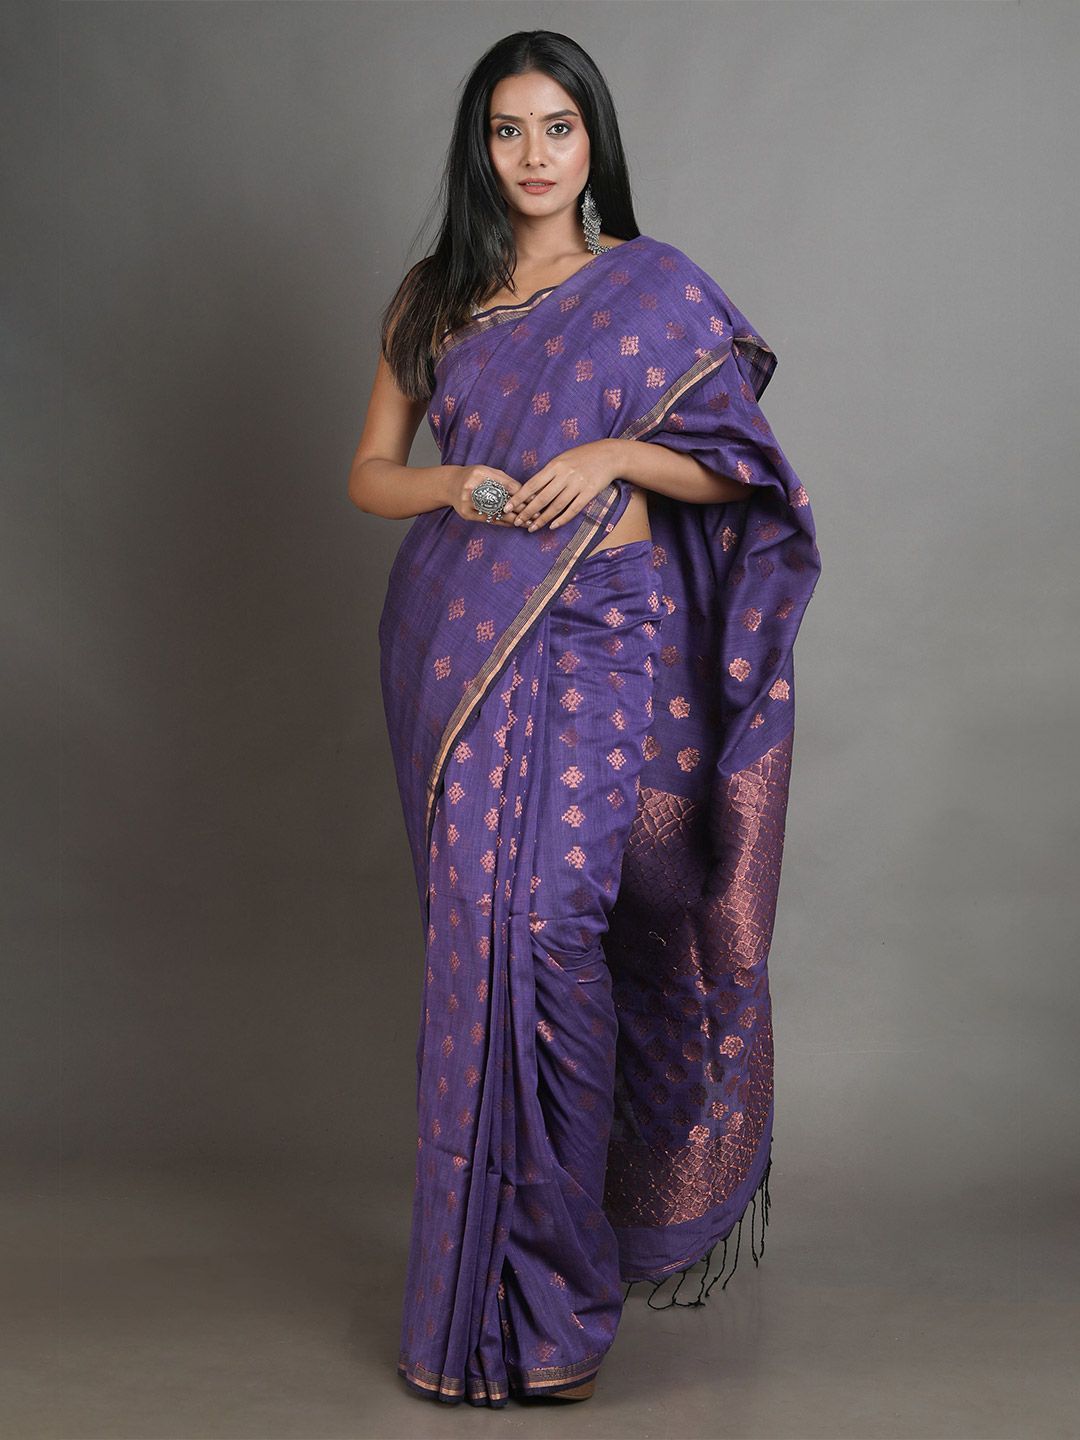 Arhi Purple & Copper-Toned Woven Design Zari Pure Linen Saree Price in India